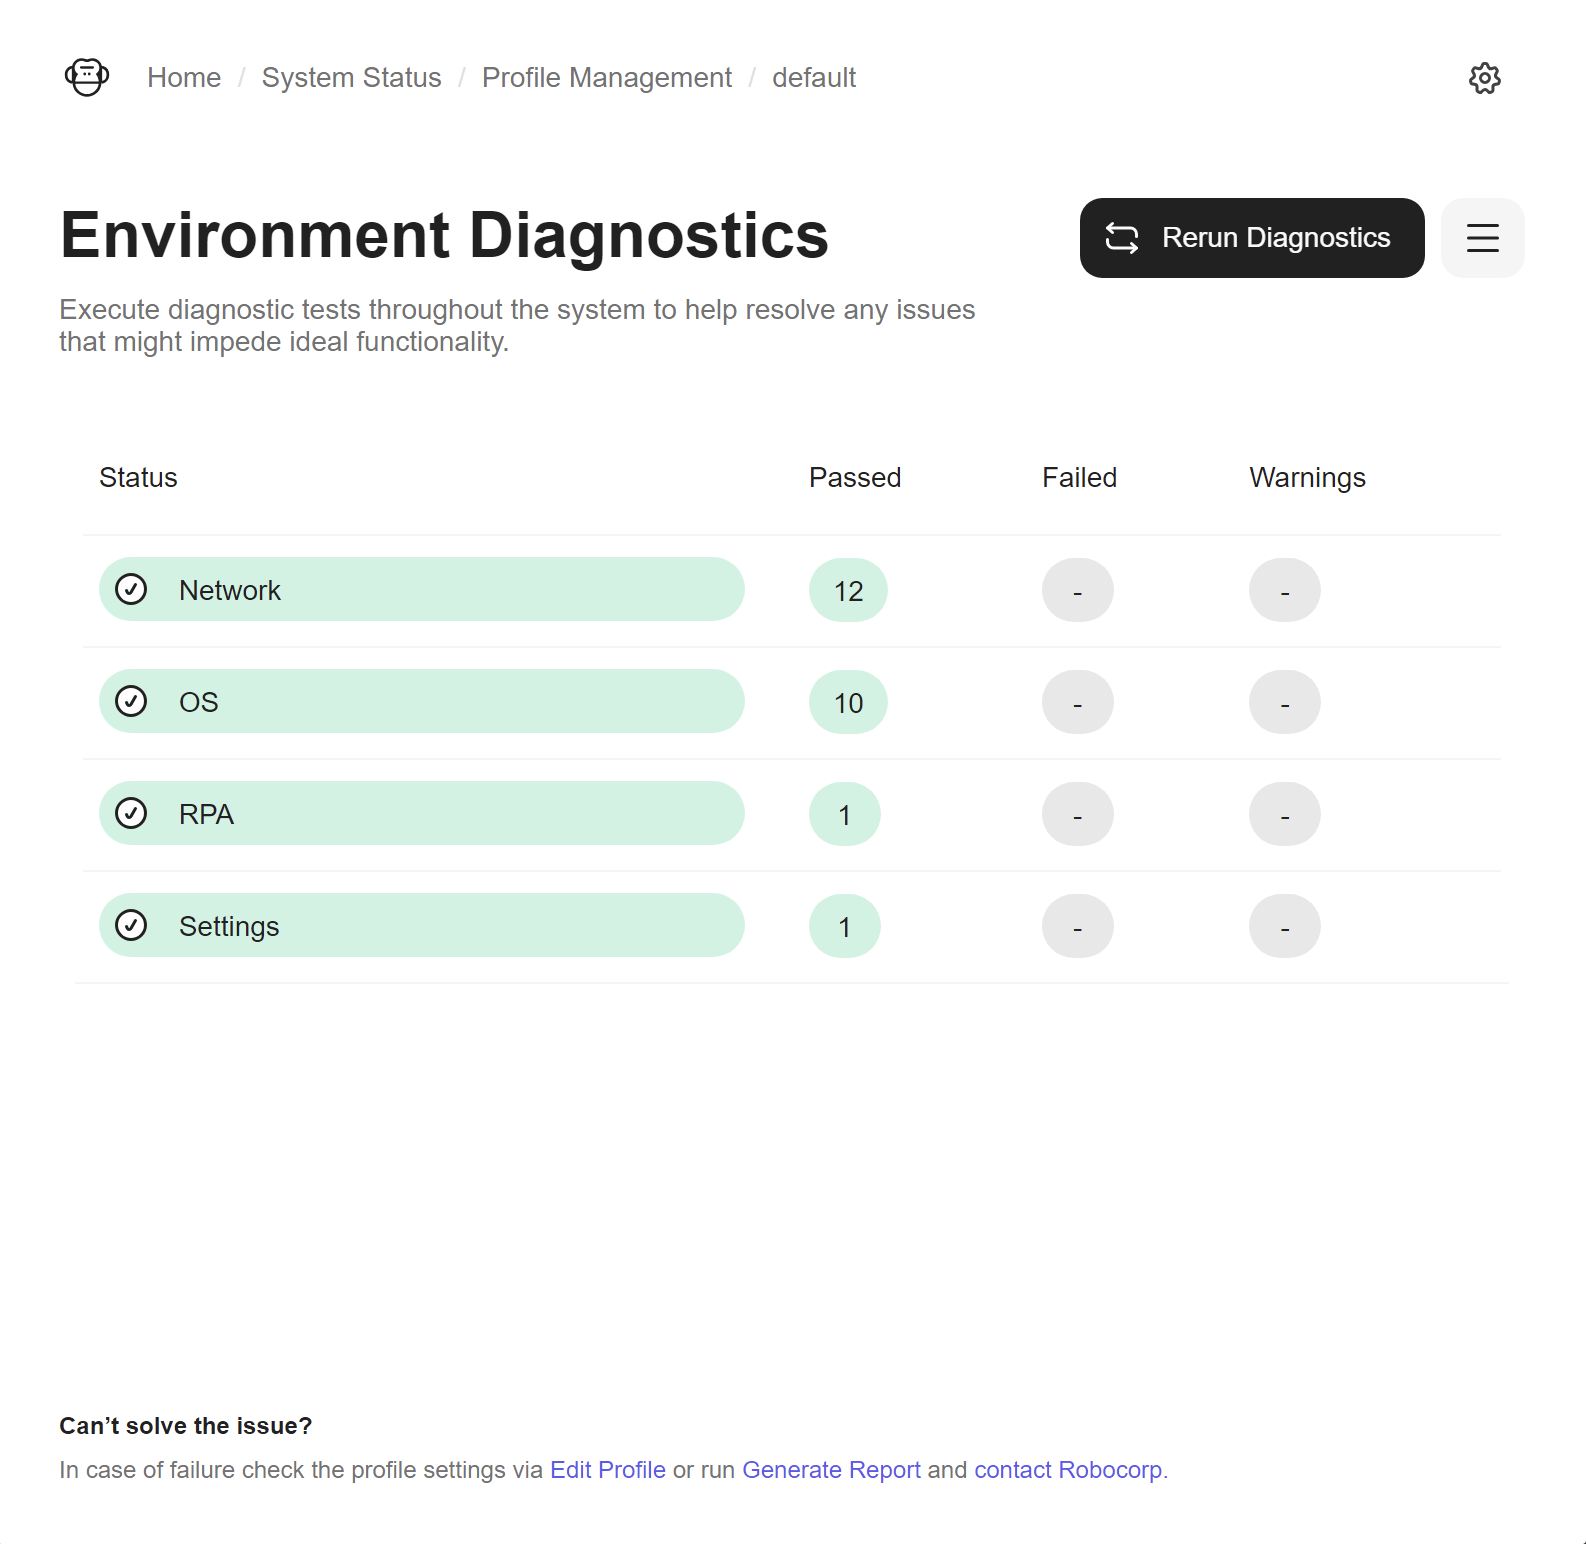 Environment Diagnostics